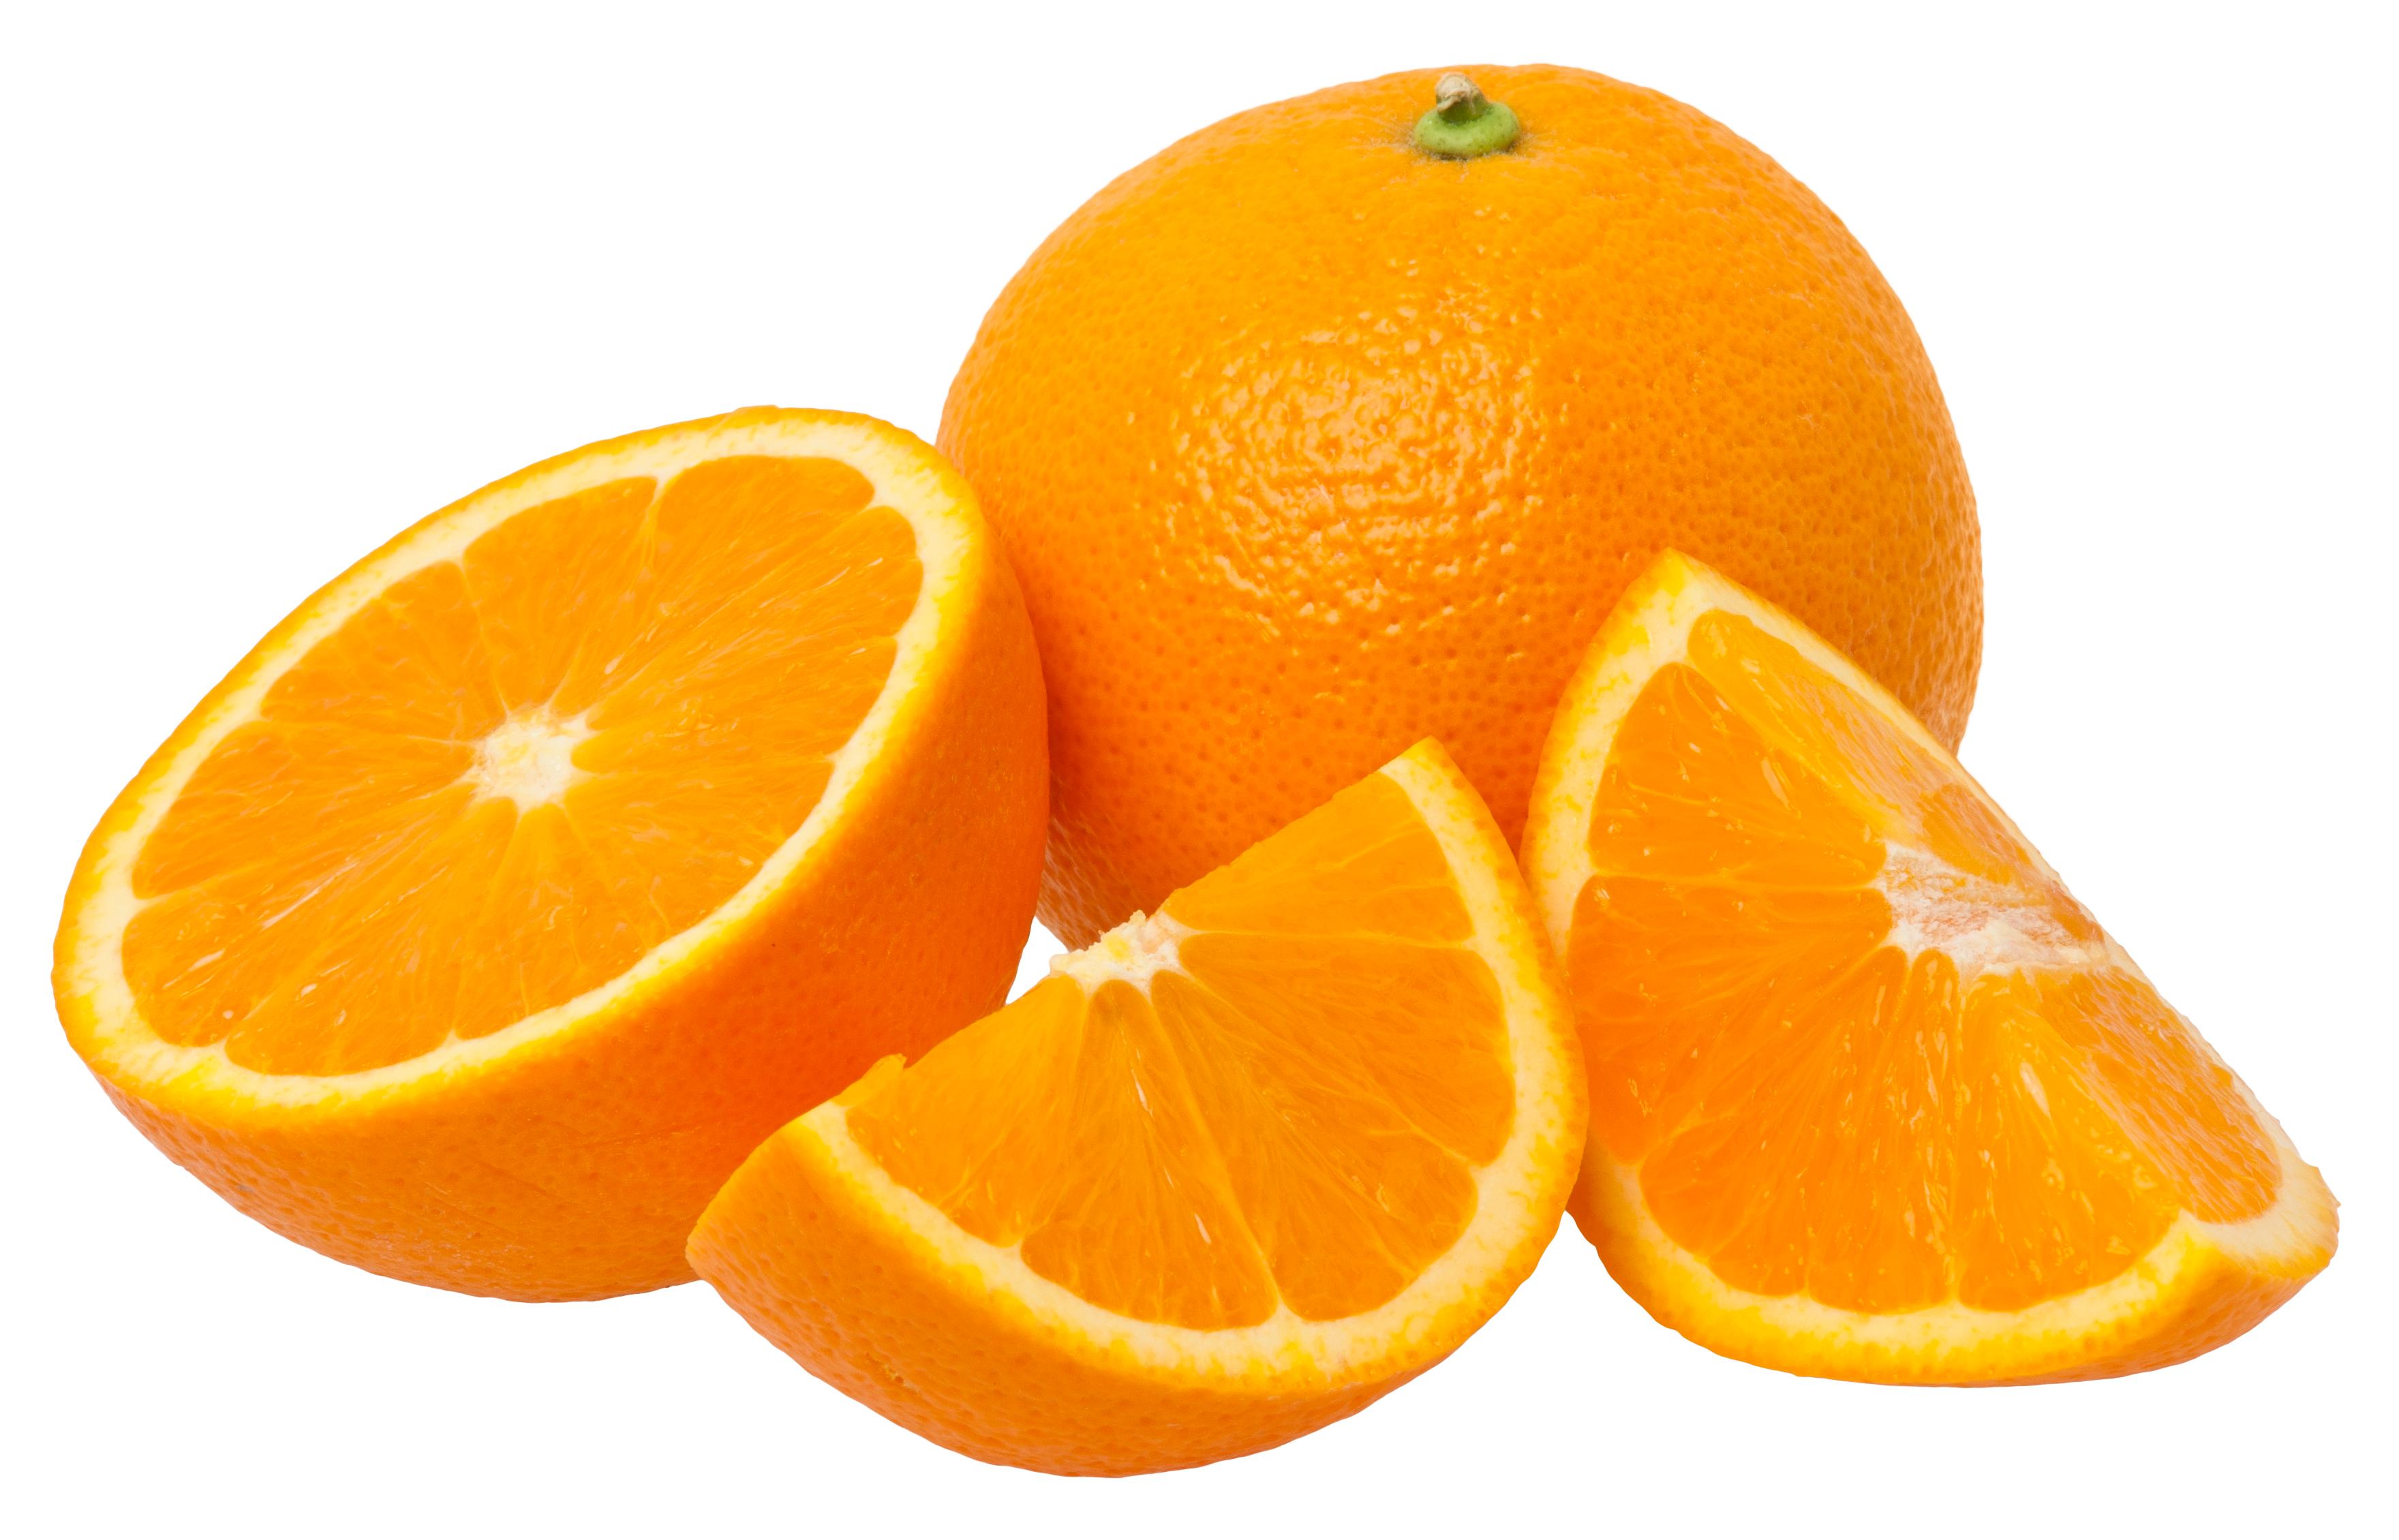 Pet razloga zašto nutricionisti preporučuju jesti narandže svaki dan